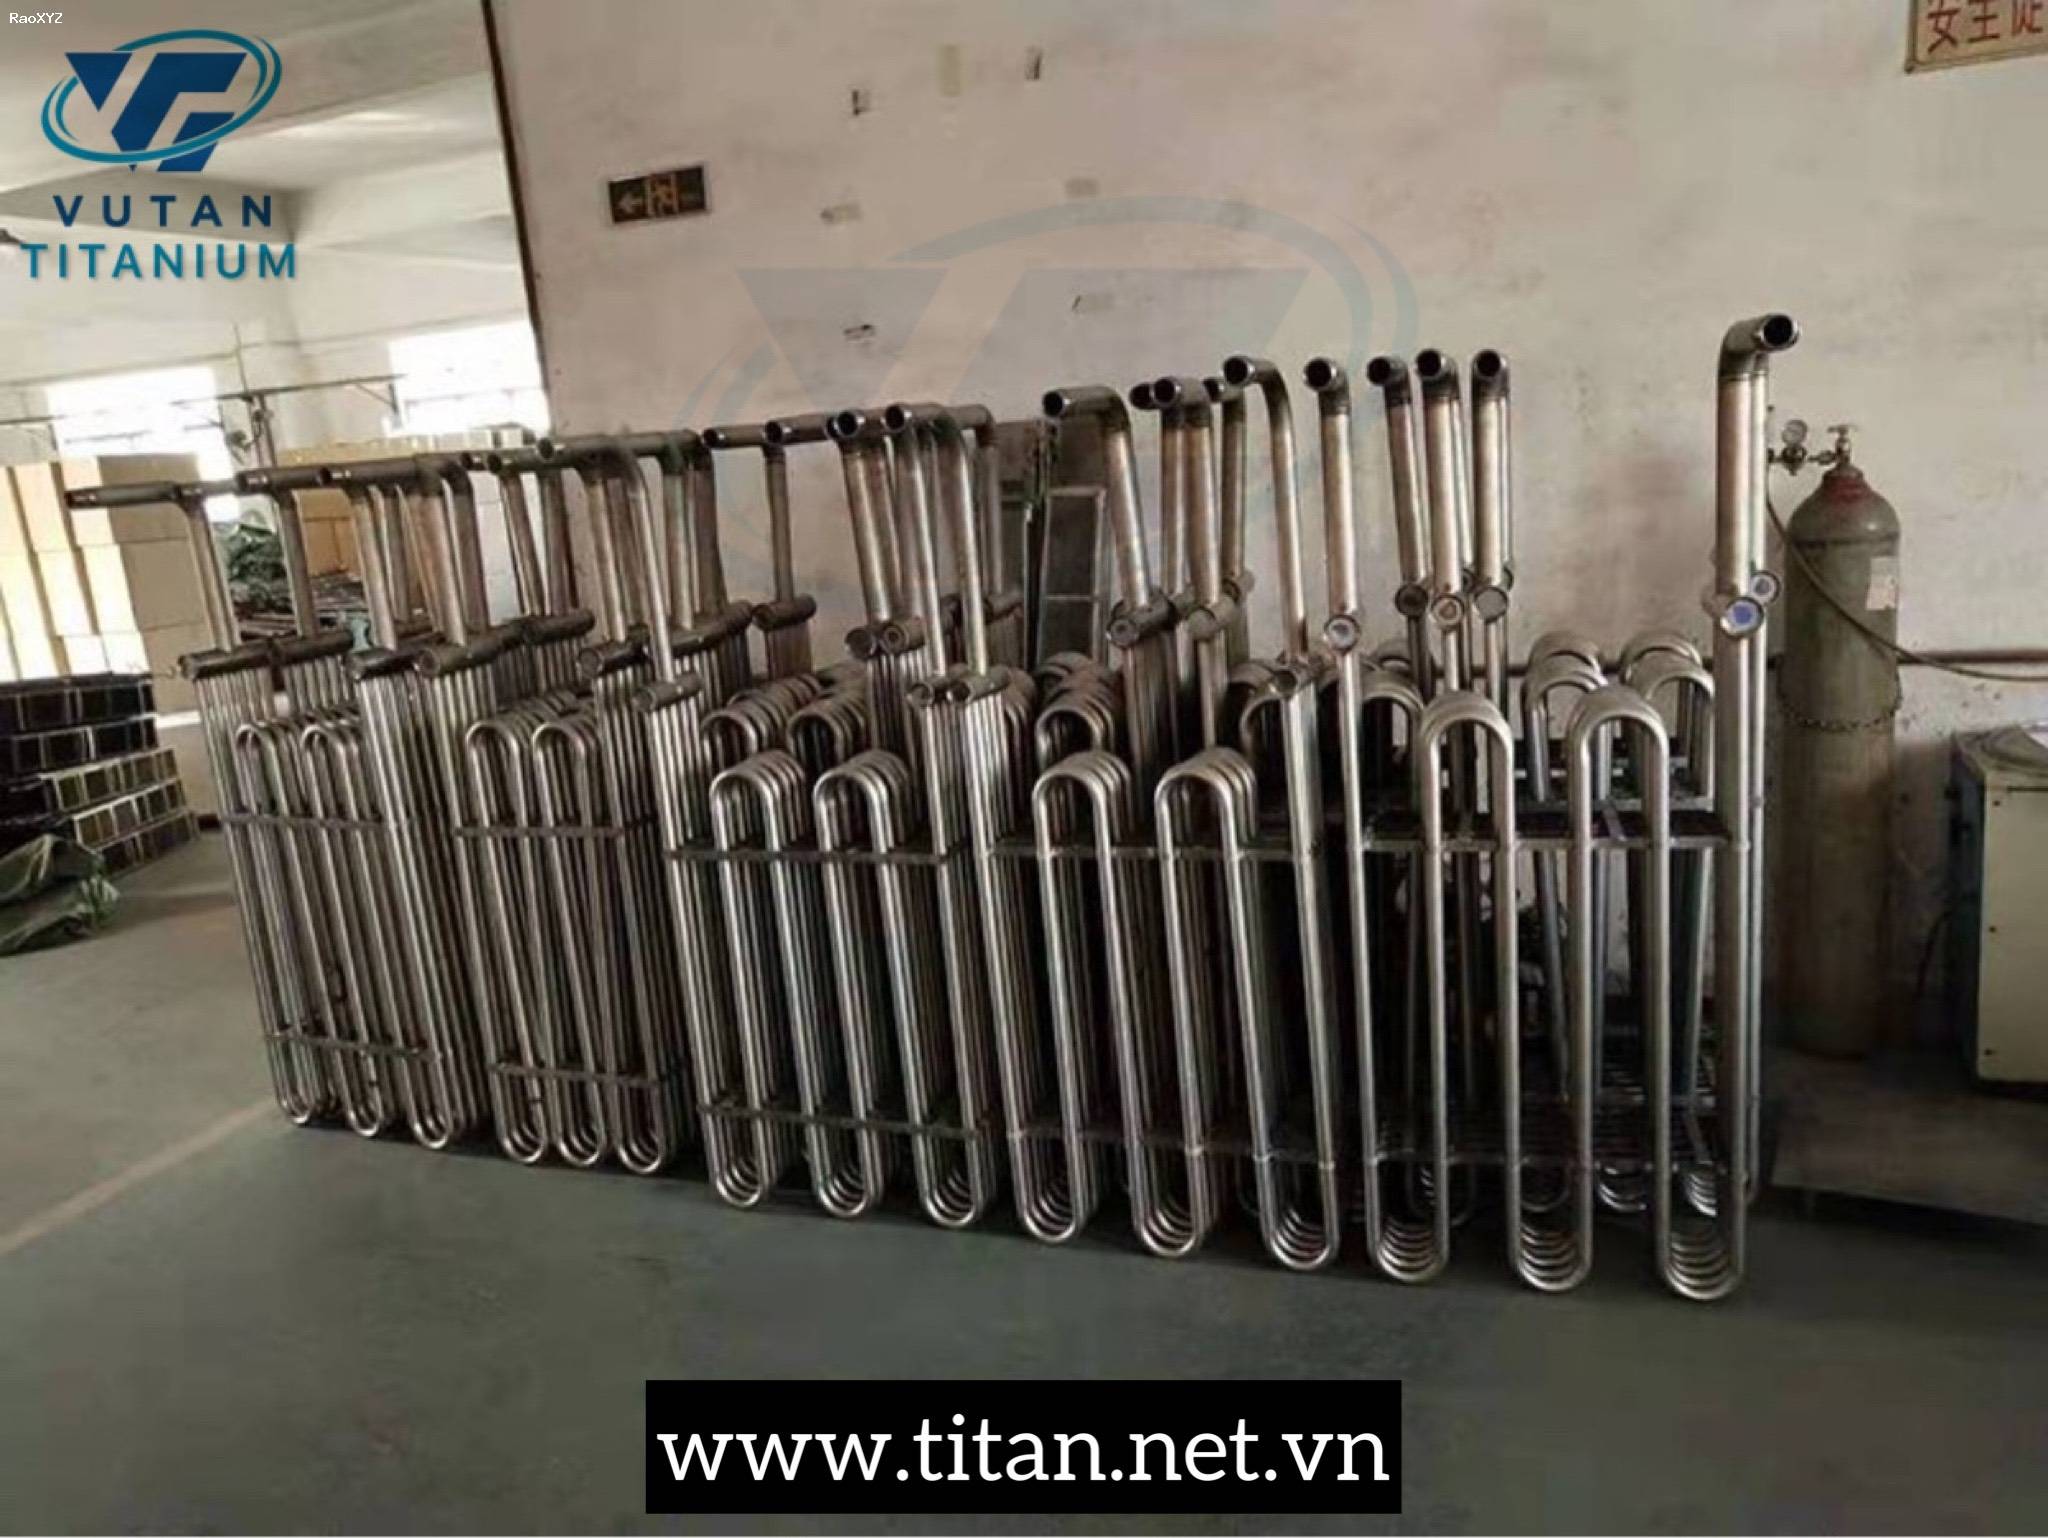 Ống trao đổi nhiệt titan-giàn gia nhiệt titan-ống ruột gà titan-gia công titan